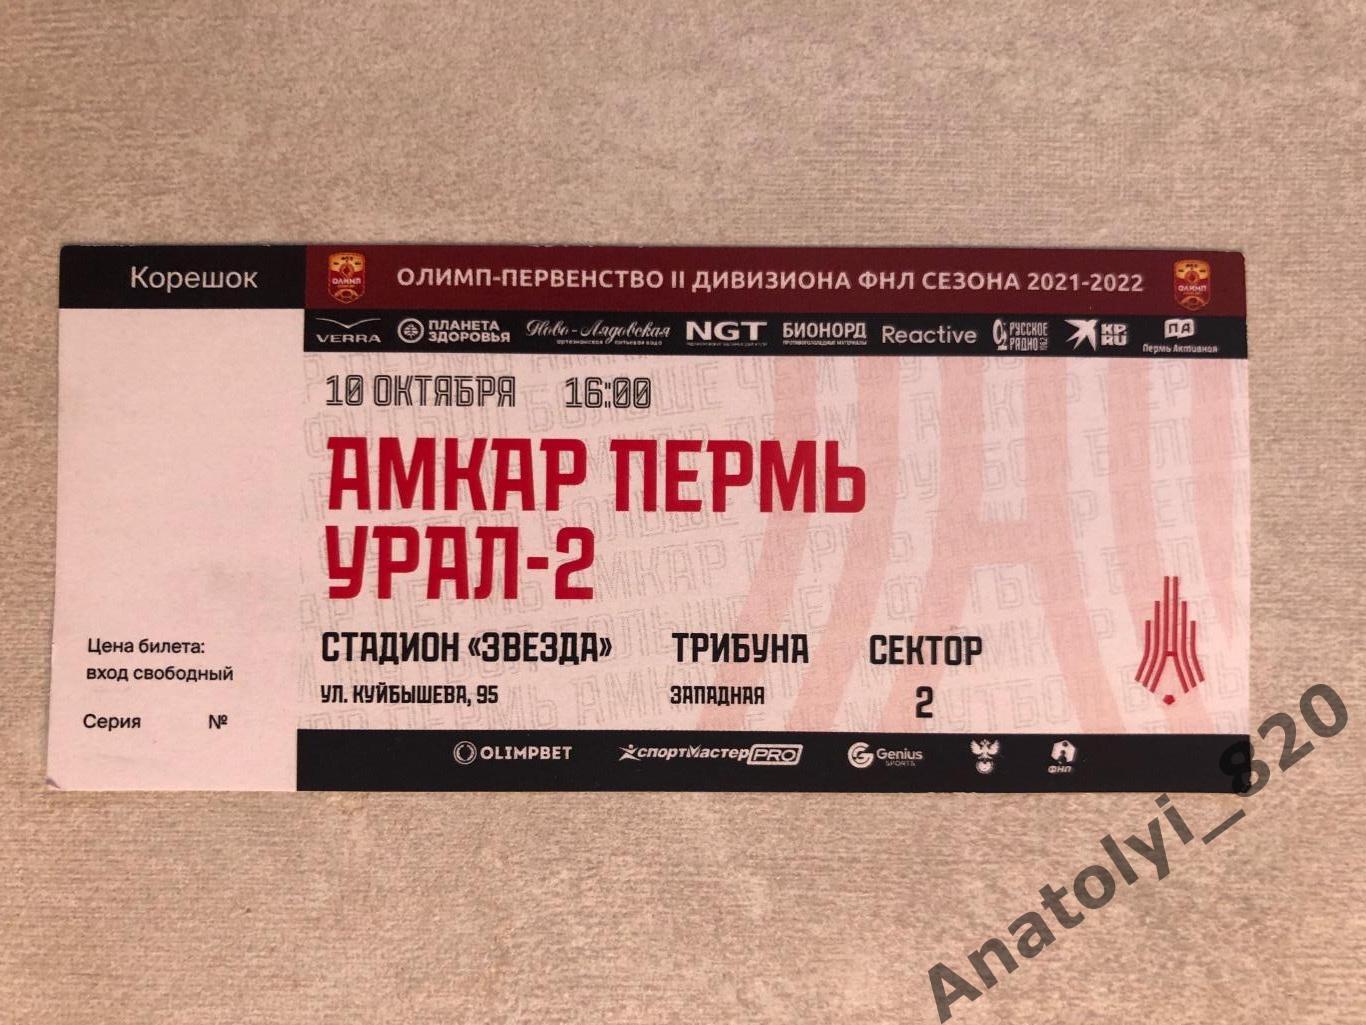 Амкар Пермь - Урал-2 Екатеринбург, 10.10.2021 билет